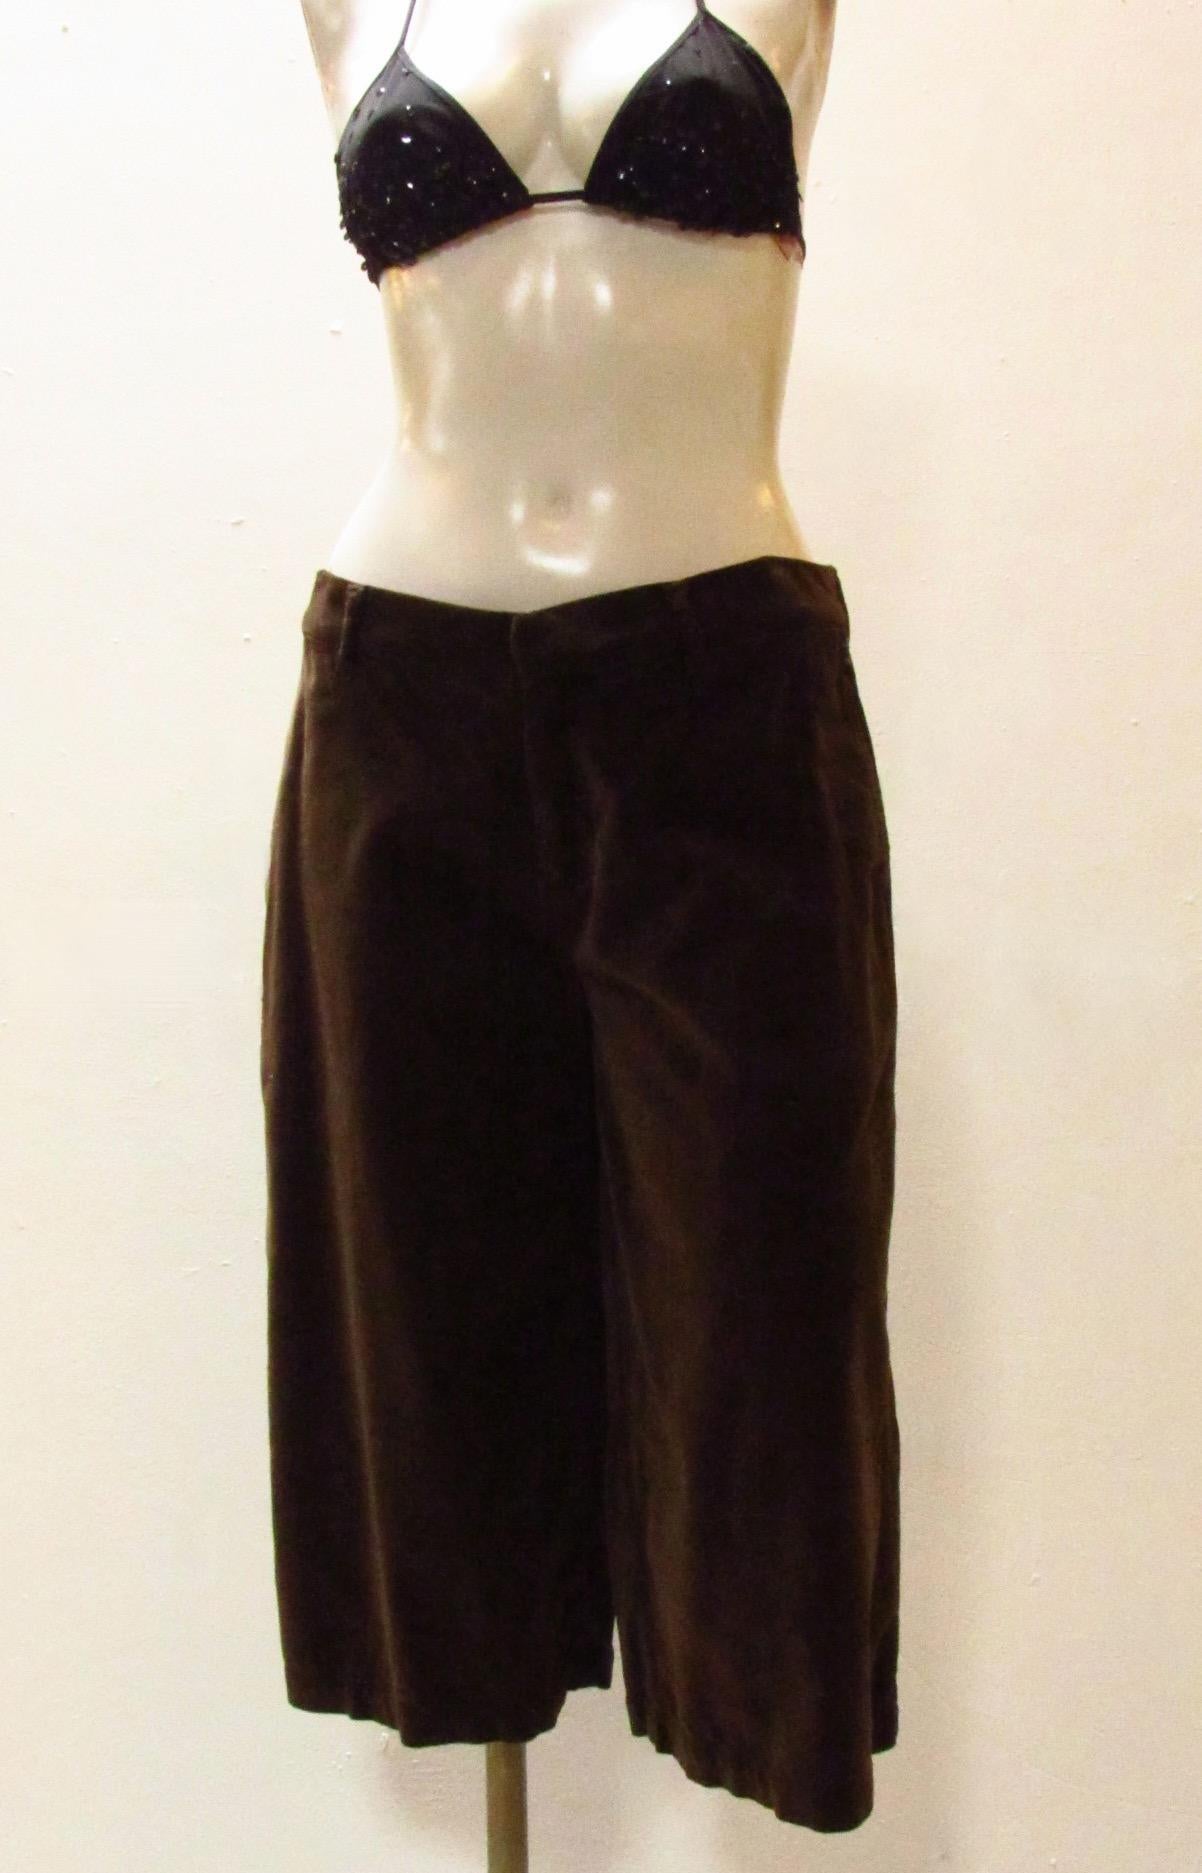 Knielange Shorts aus schokoladenbraunem Samt von Jean Paul Gaultier im Vintage-Stil. Zwei seitliche Einschubtaschen sowie zwei Gesäßtaschen mit Stickerei. Eine Schnalle am Rücken ermöglicht es Ihnen, den Stoff für eine bessere Passform